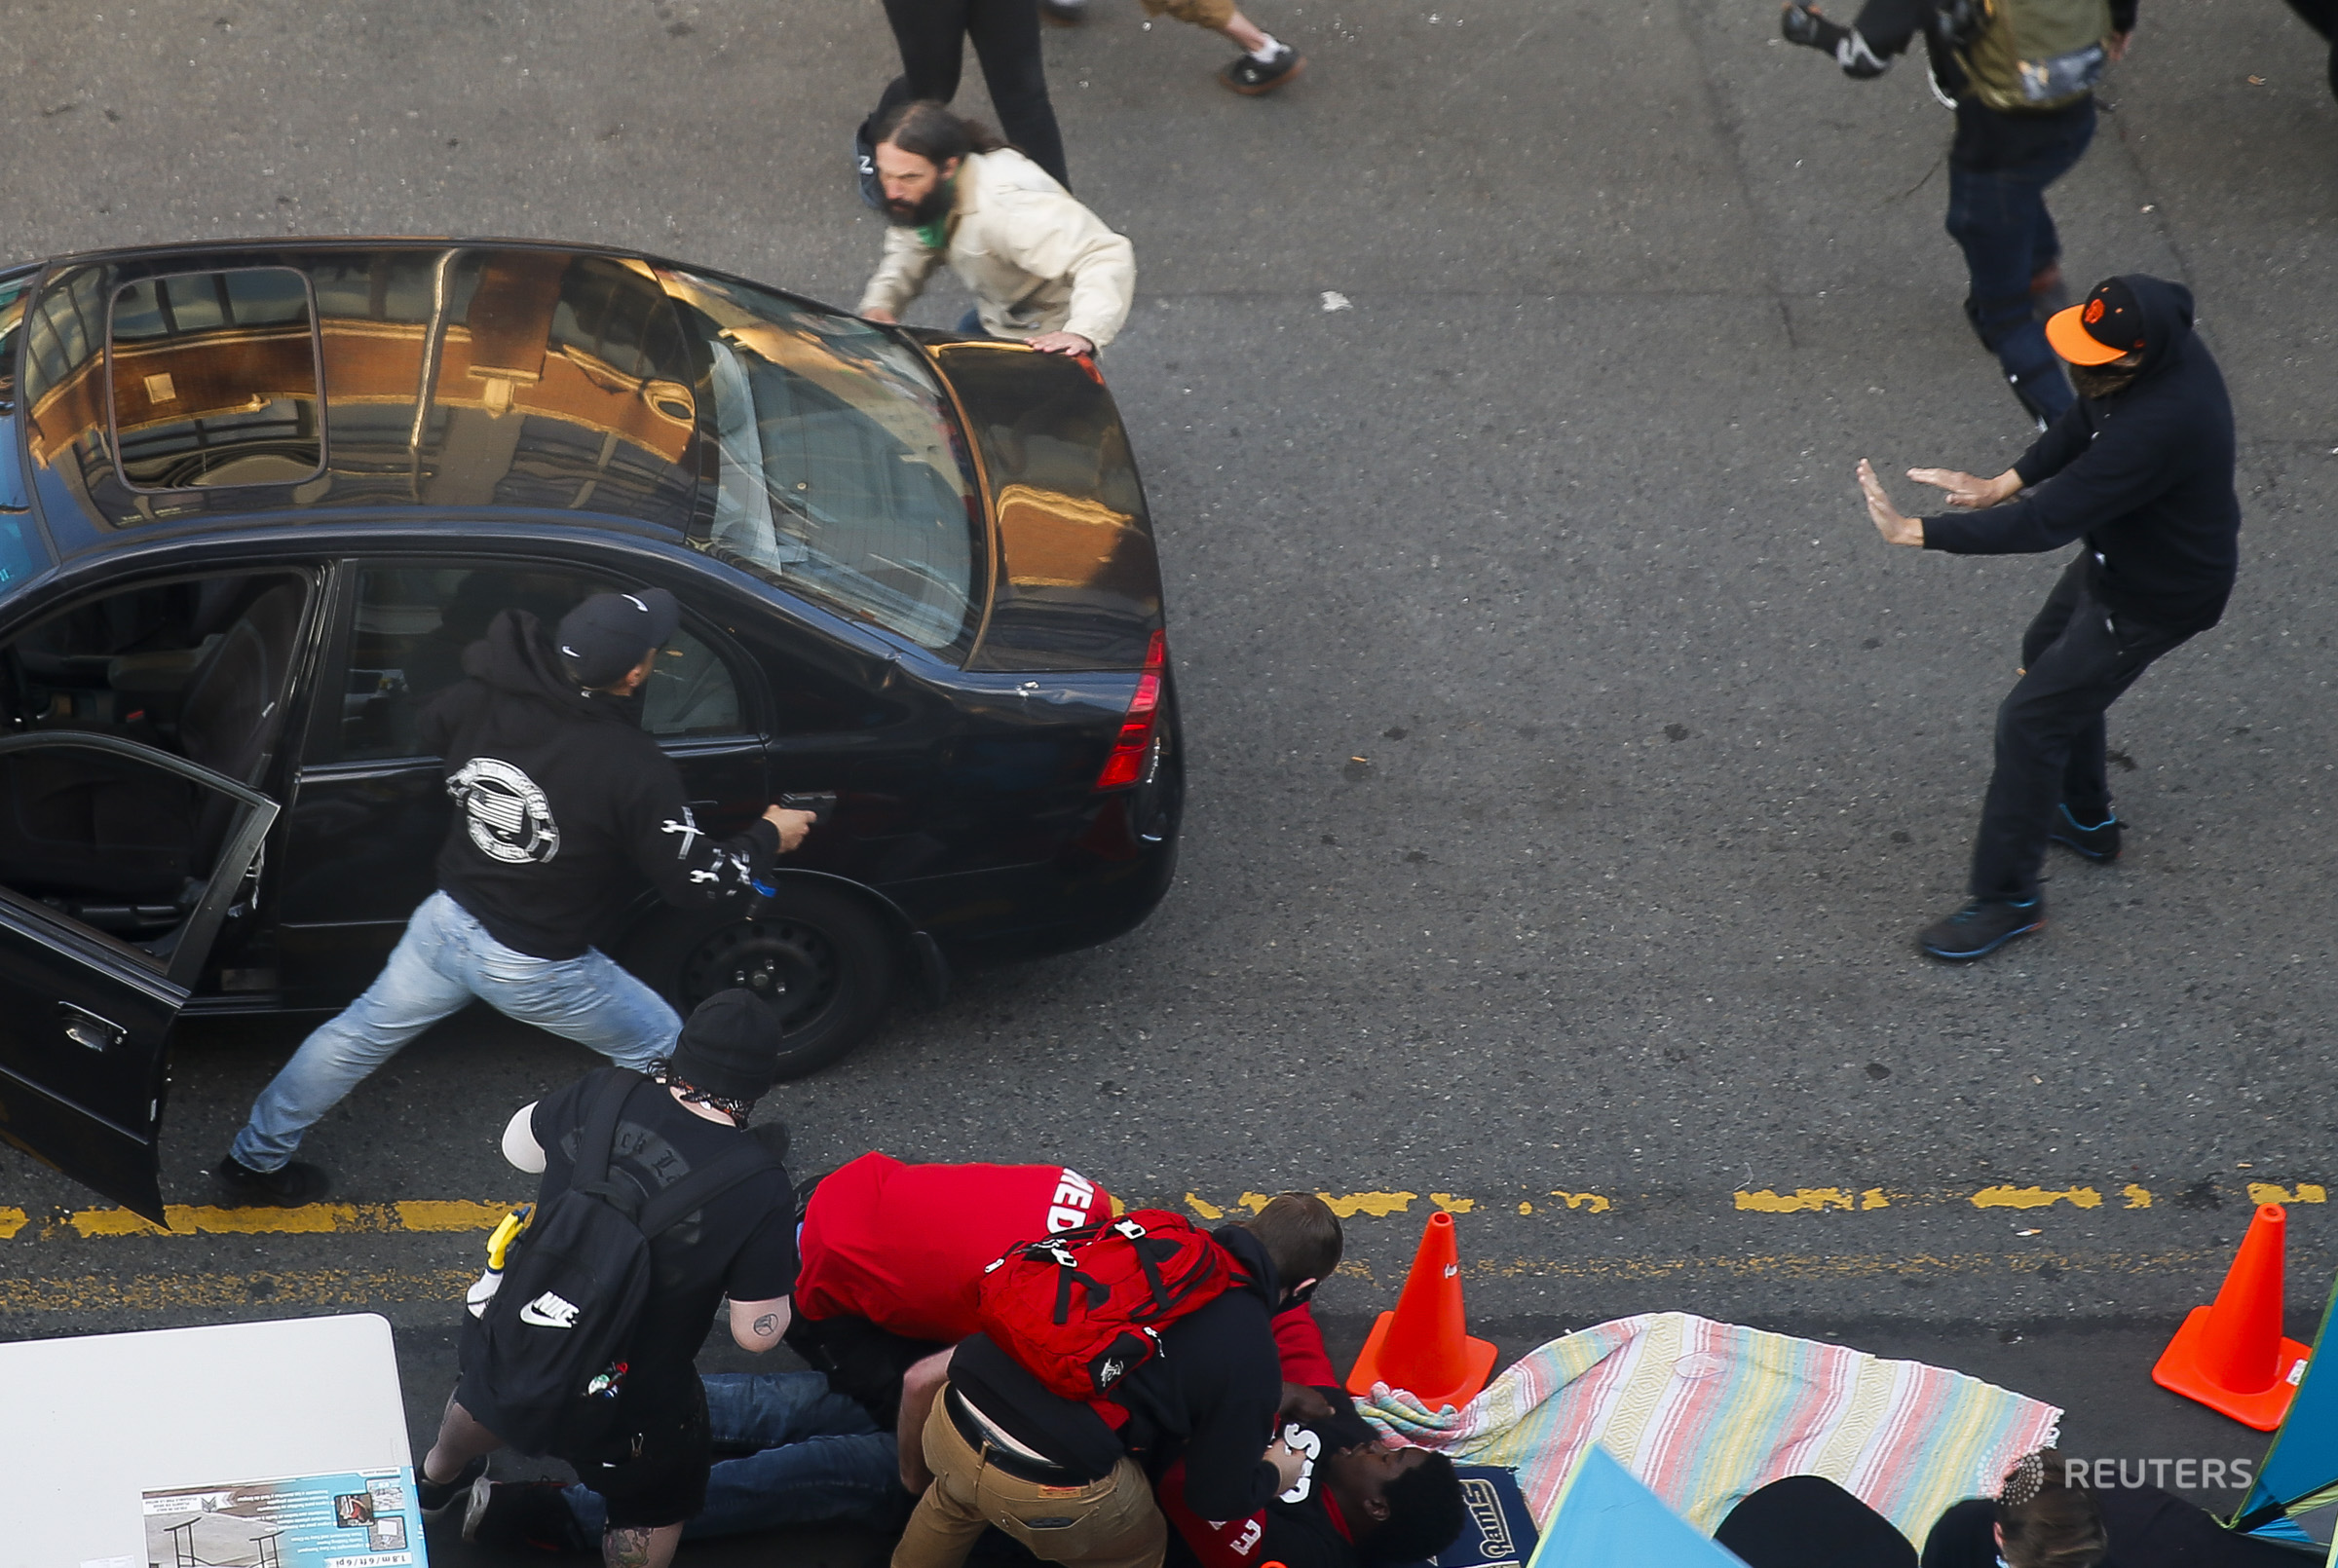 Δολοφονία Φλόιντ: Αυτοκίνητο έπεσε πάνω σε διαδηλωτές και ο οδηγός πυροβόλησε έναν από αυτούς (βίντεο)